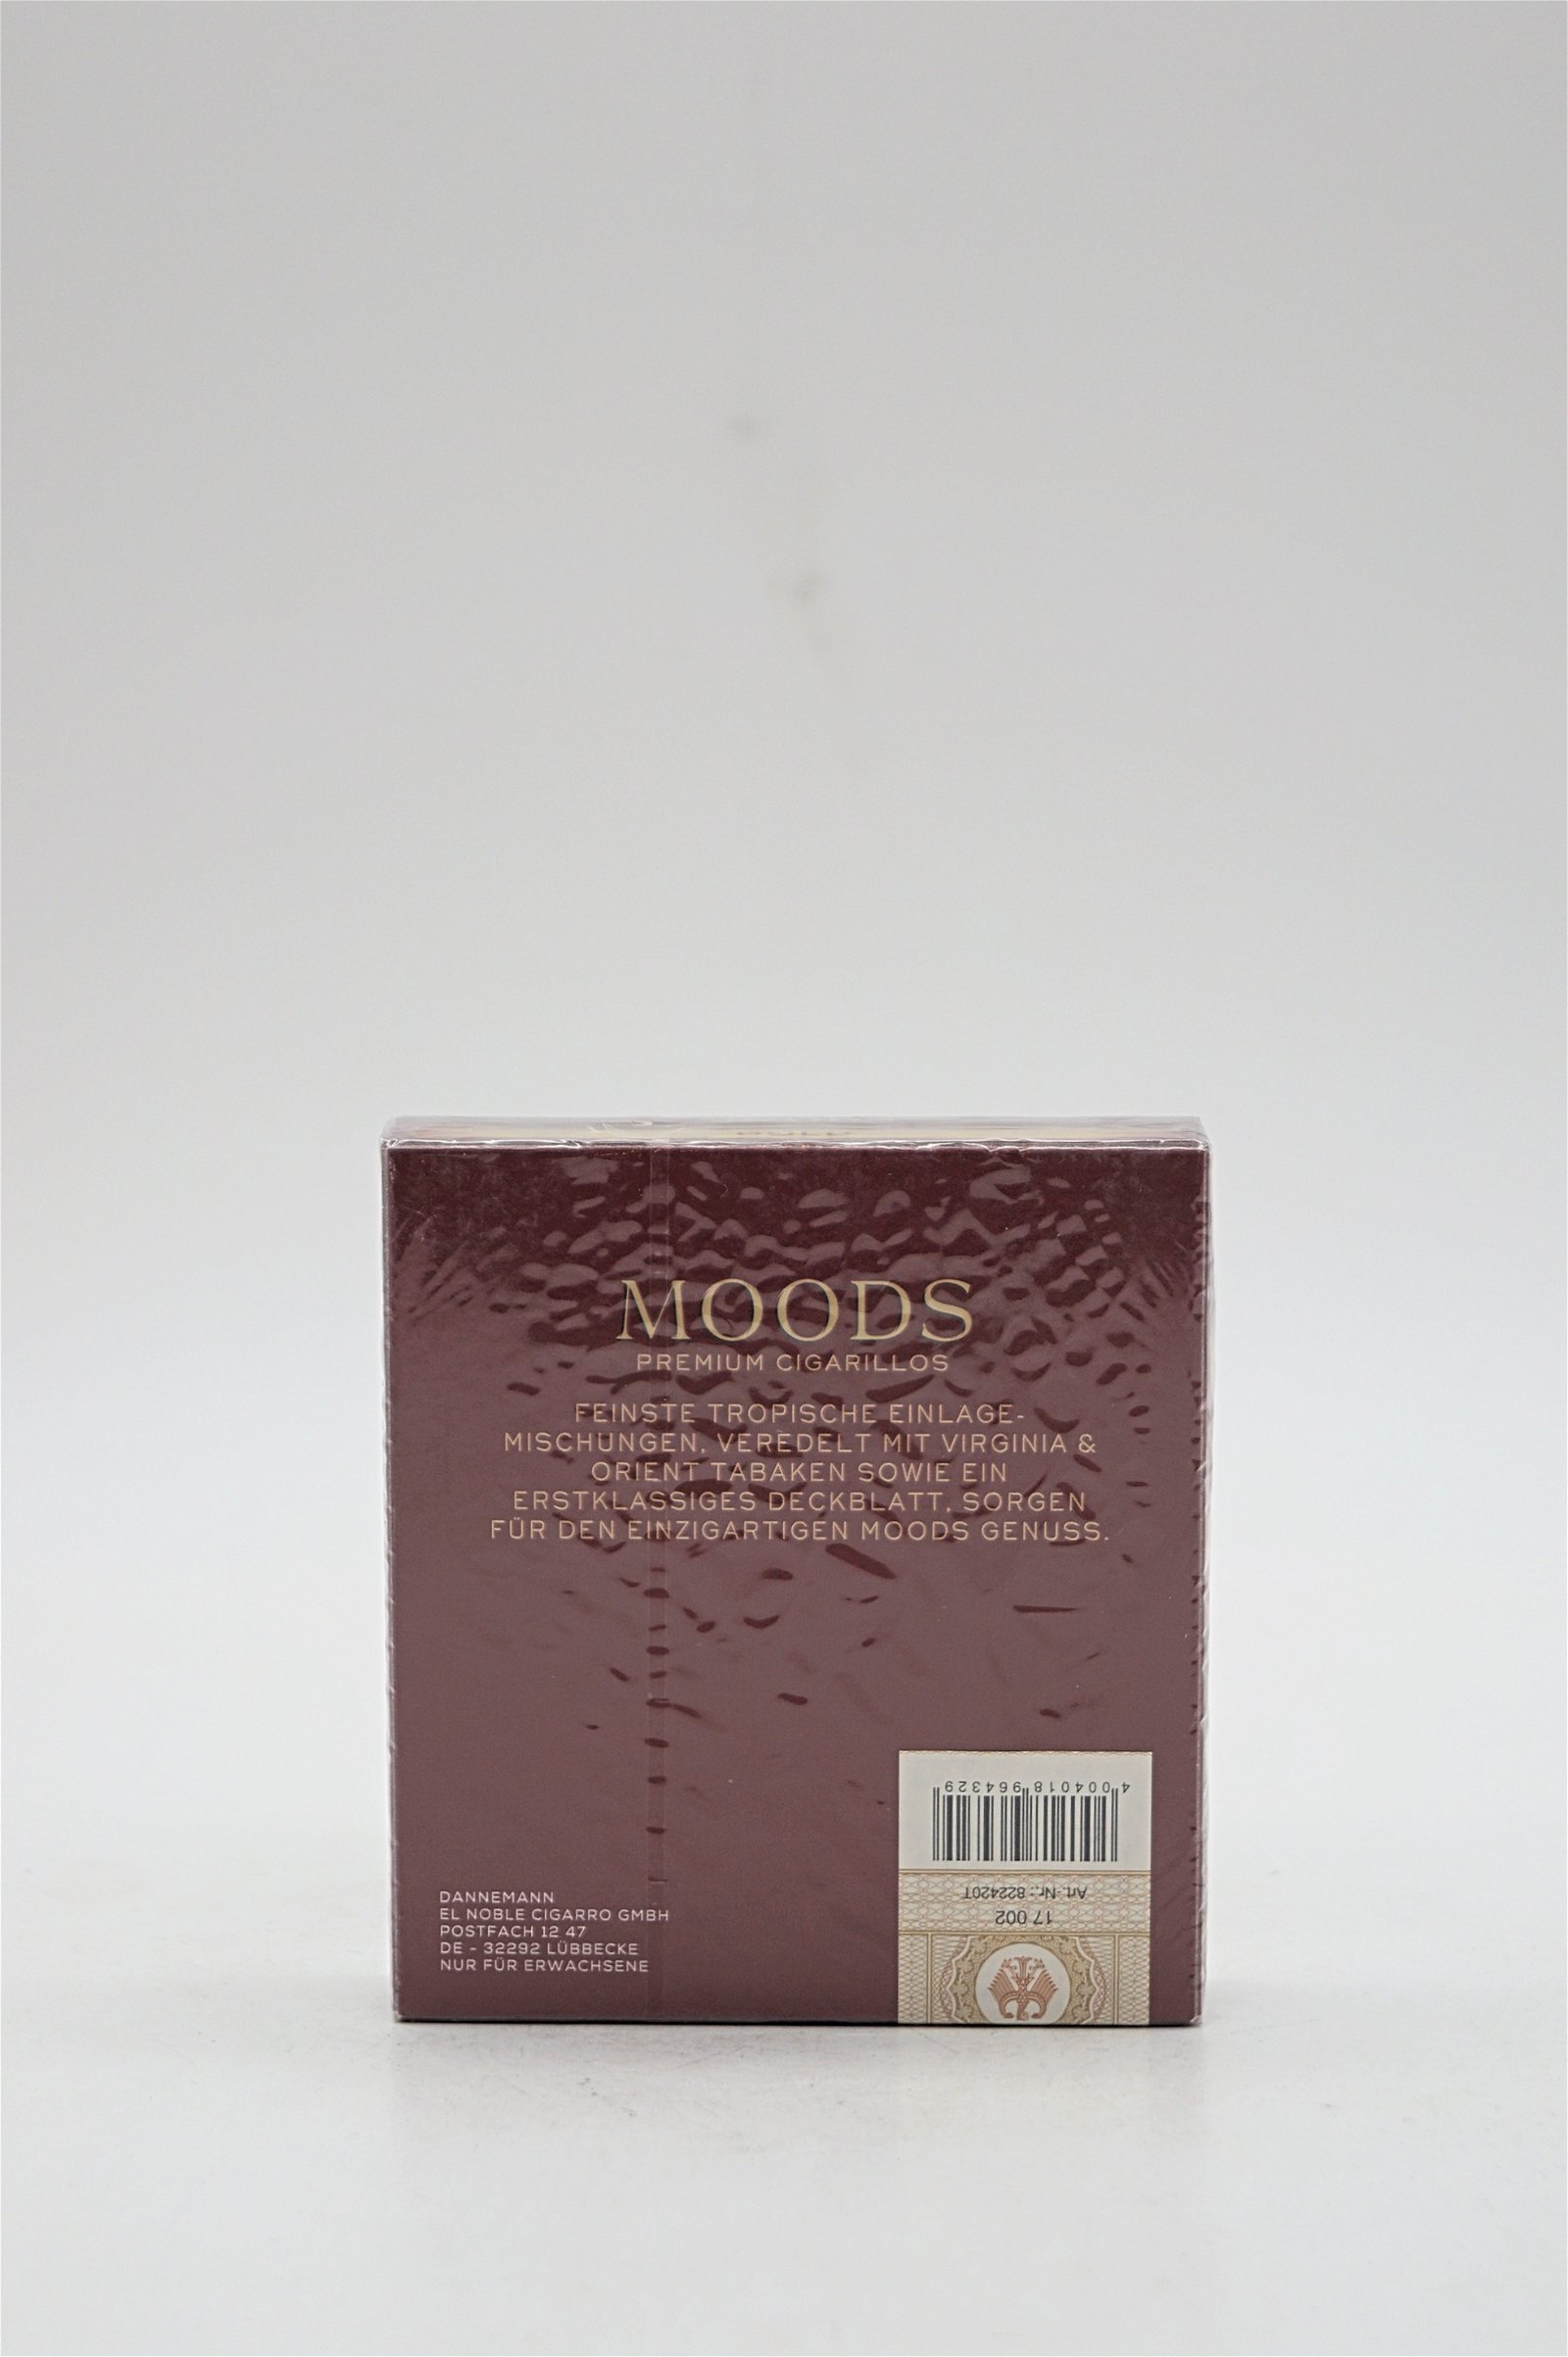 Moods Gold Filter 20 Premium Cigarillos